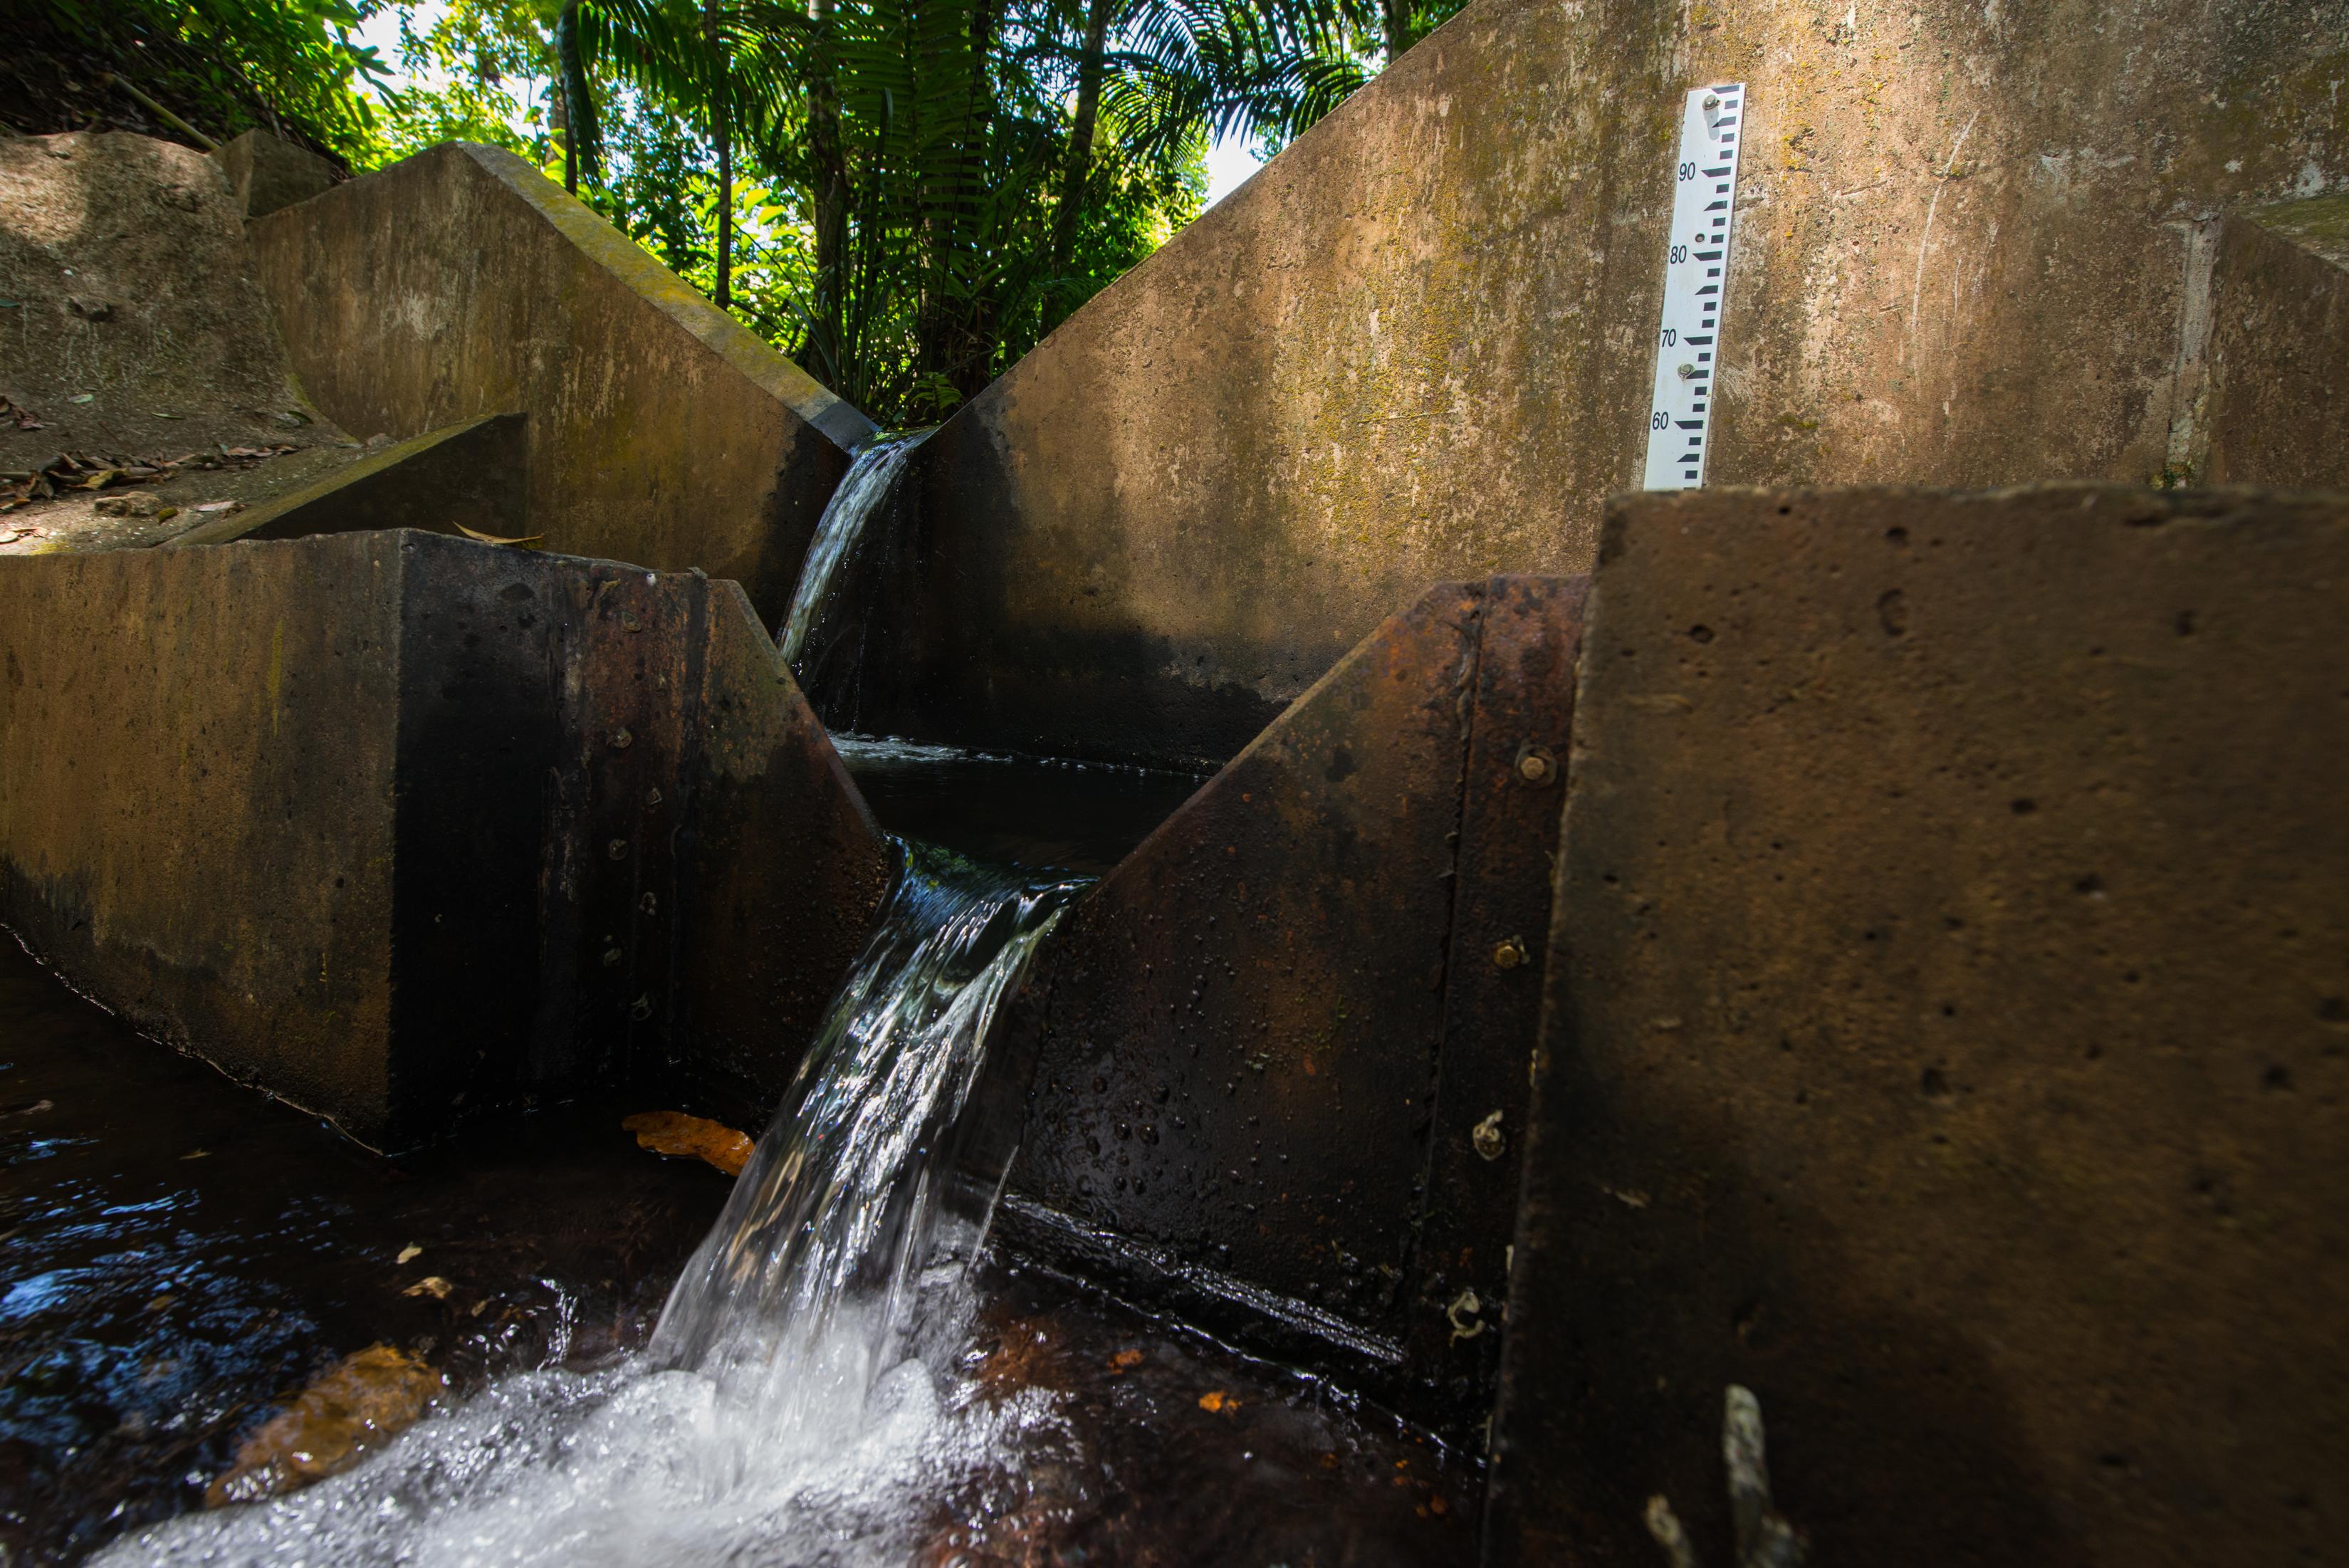 يقيس الأخصائيون الهيدرولوجيون ارتفاع المياه التي تمر خلال ممر سد صغير معروف باسم "سد الغاطس" بهدف حساب كمية المياه الإجمالية التي تنساب من أي مجرى. 
 صورة من سين ماتسون.
